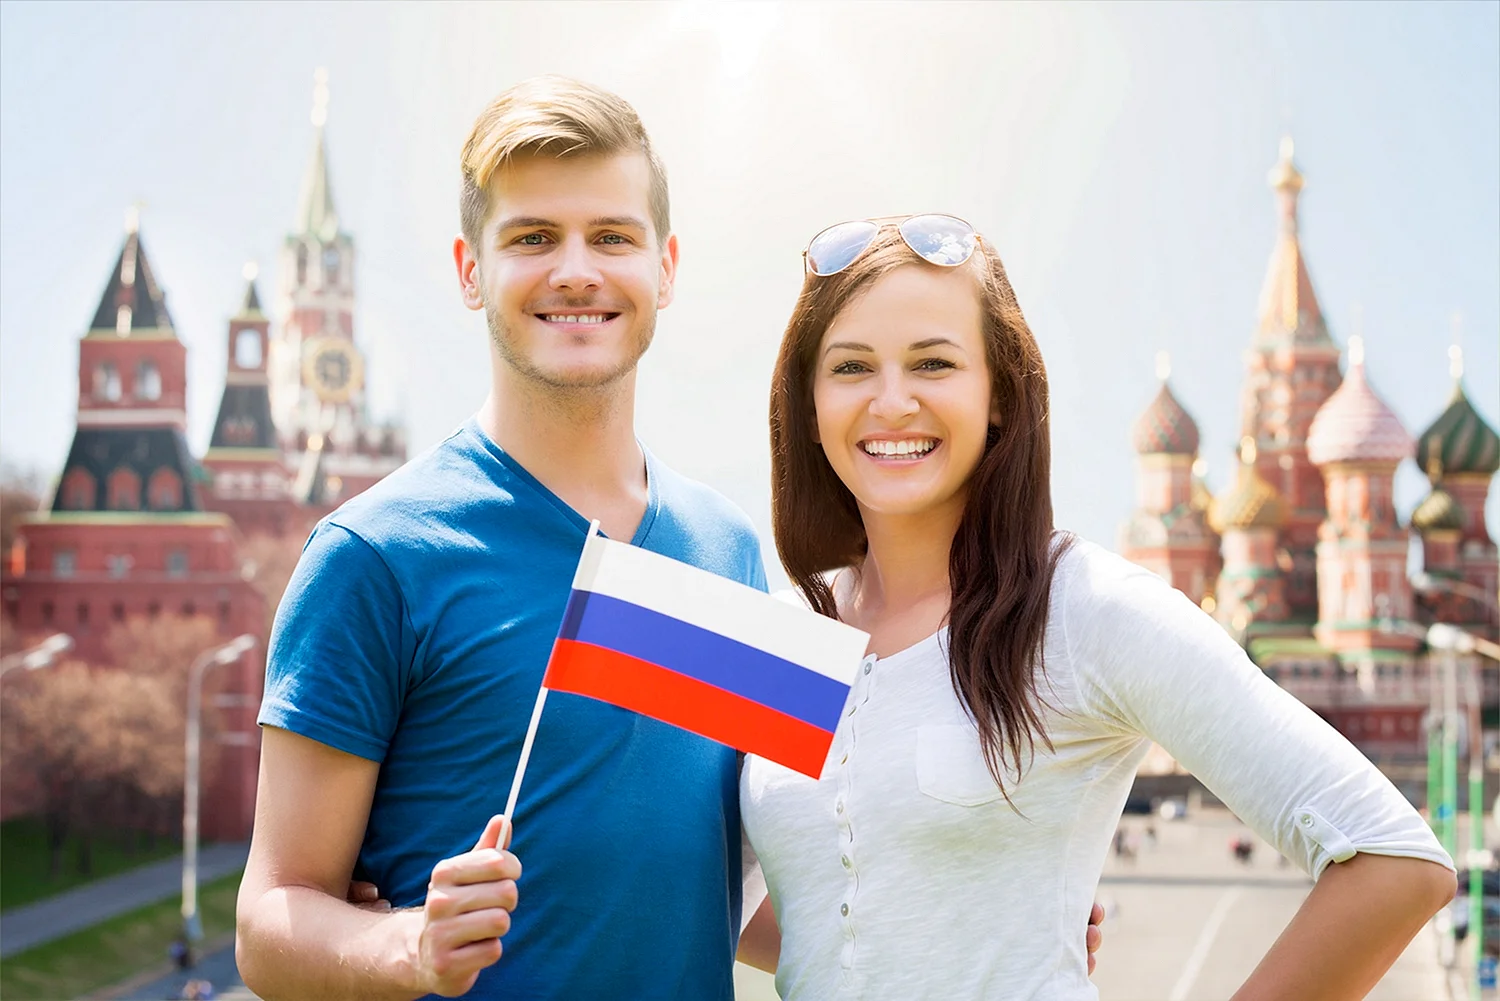 Молодежь с флагом России